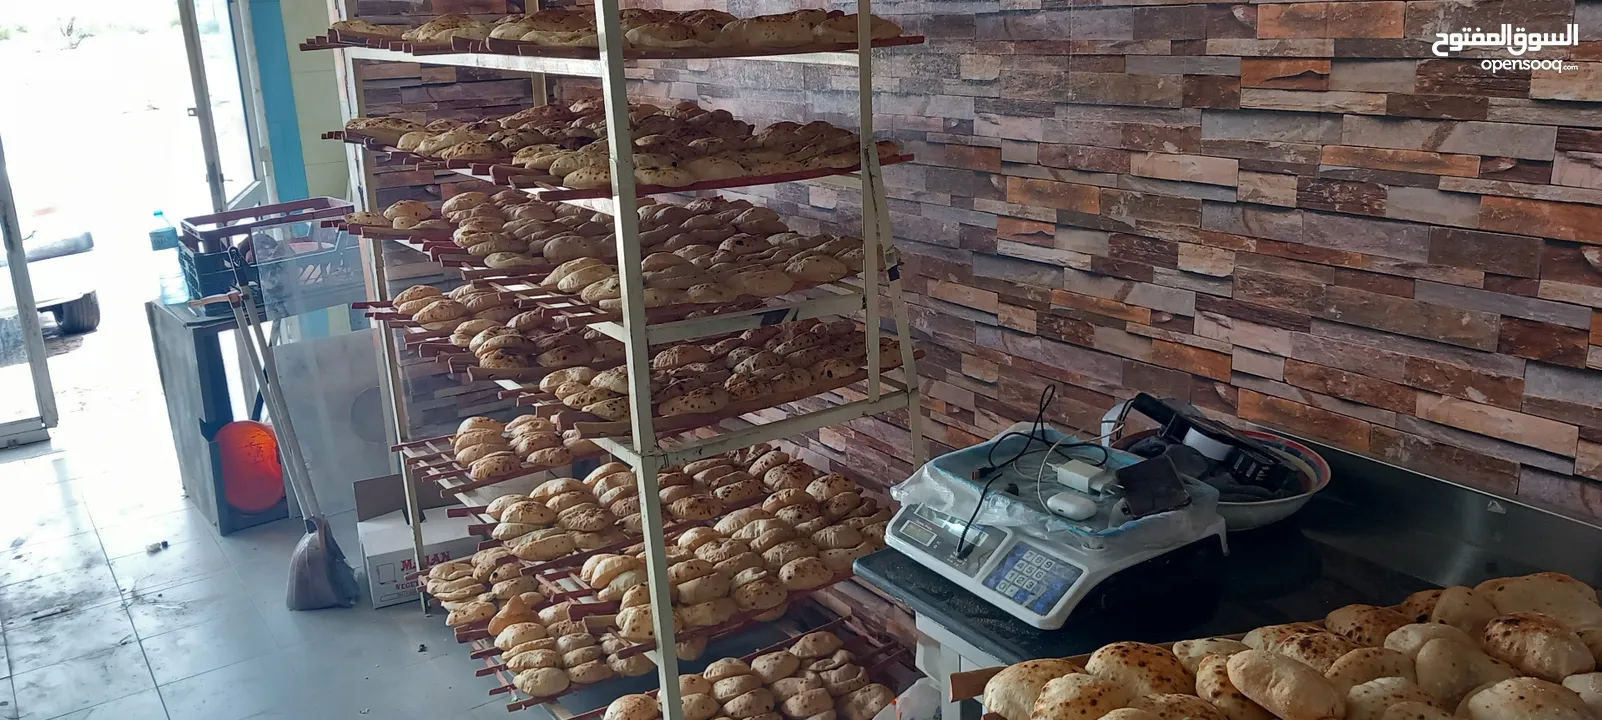 مخبز مصري للبيع